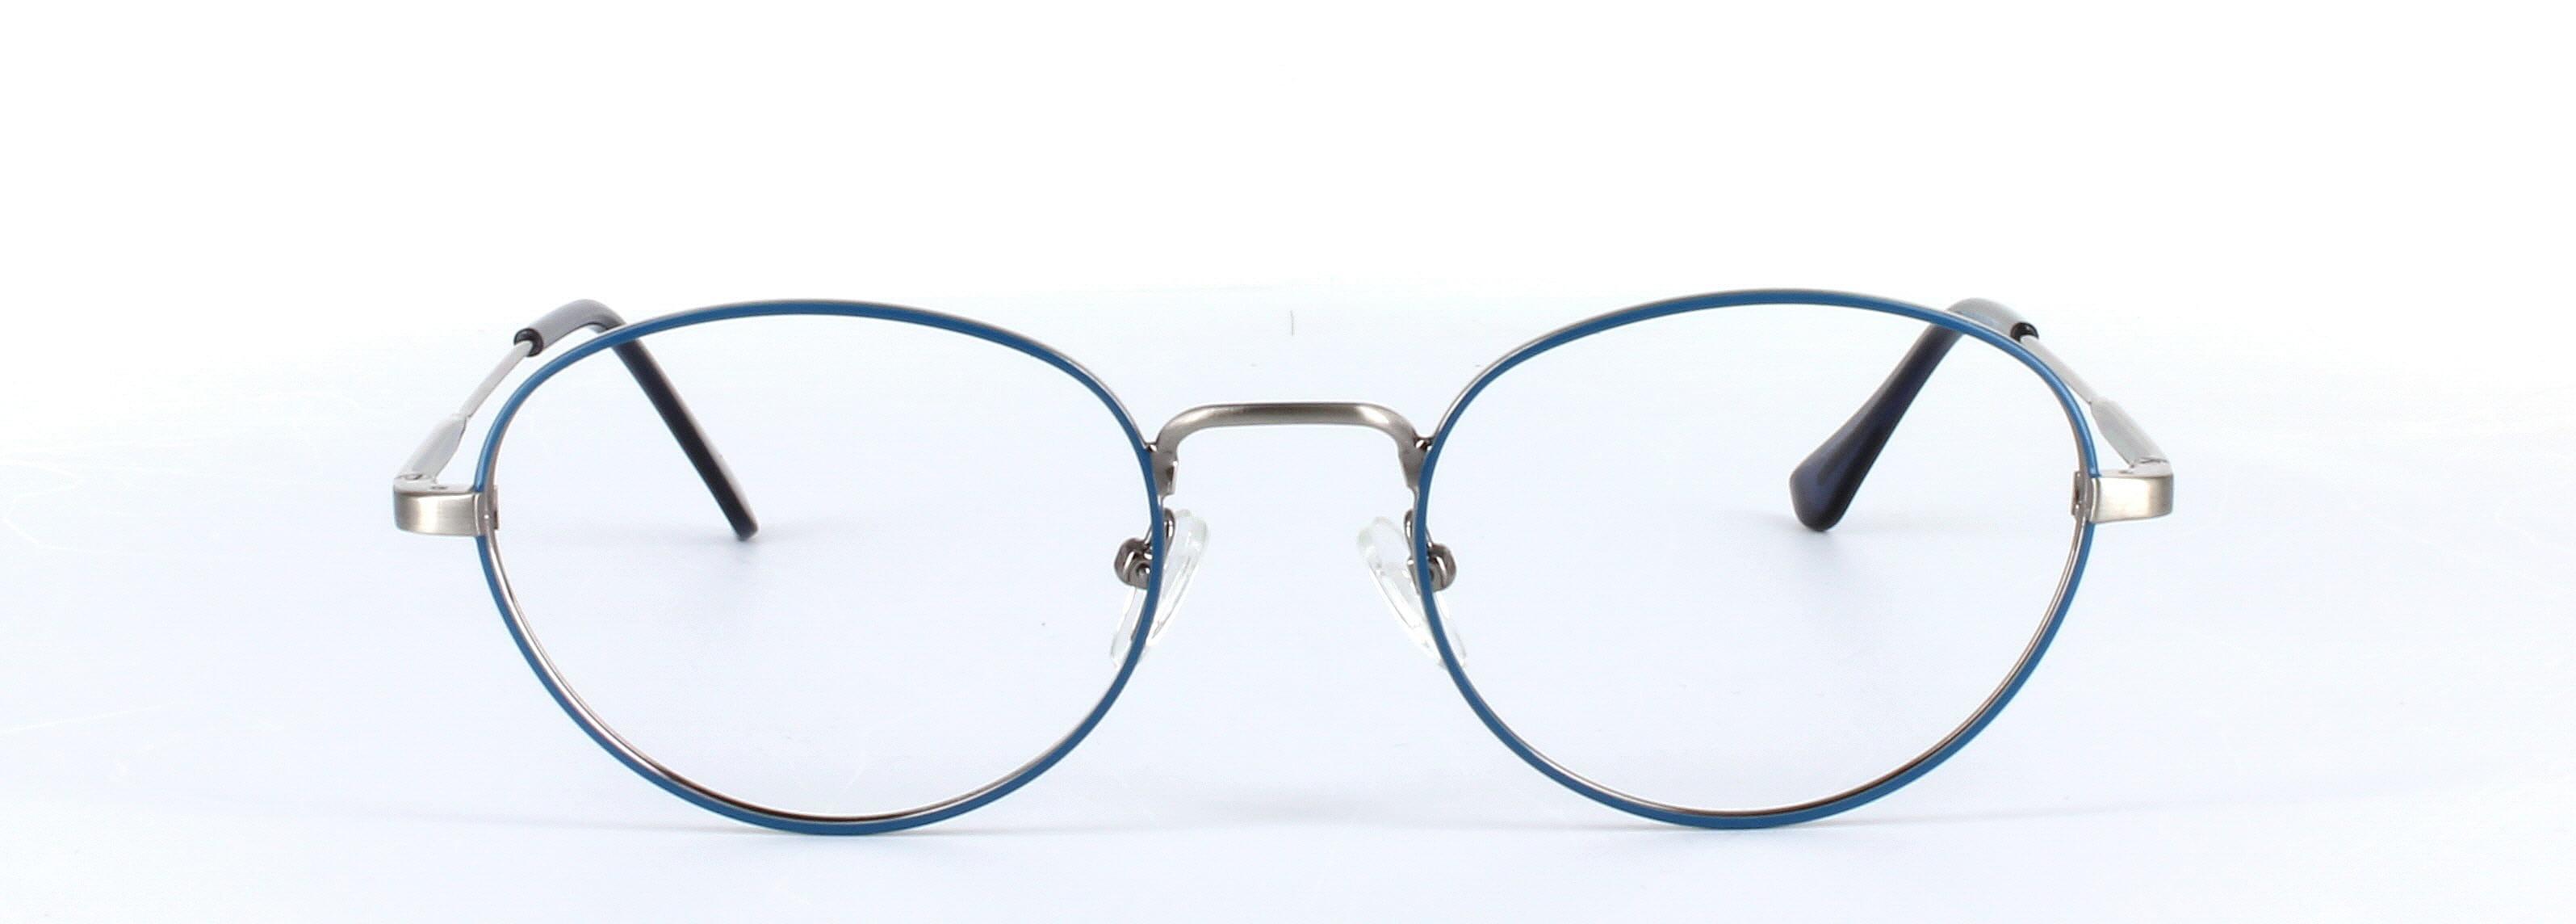 Esperanza Silver Full Rim Oval Metal Glasses - Image View 5